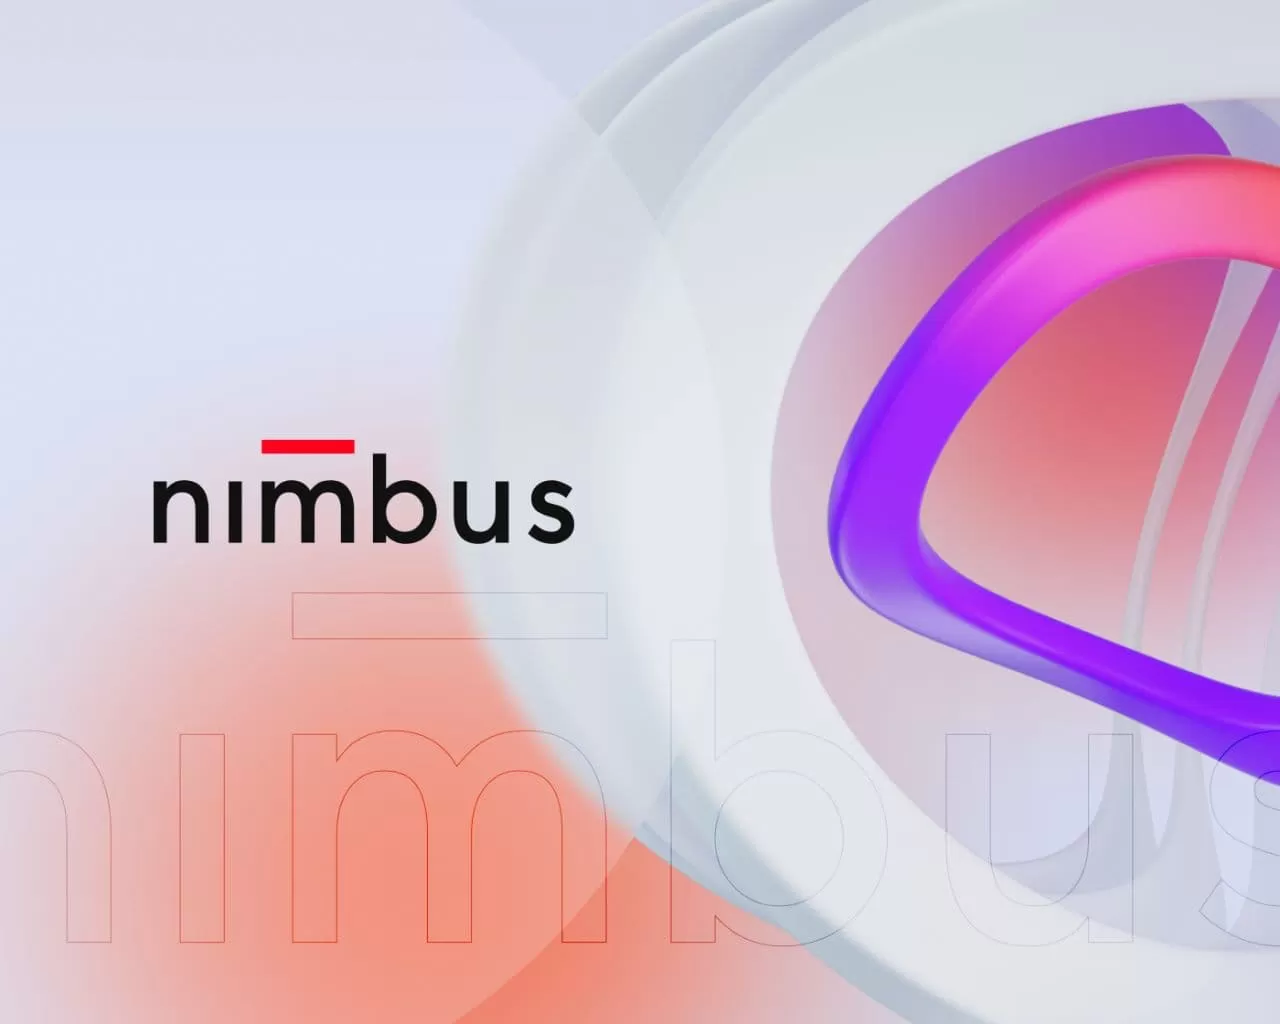 Nimbus inició una propuesta de colaboración con la CNMV para aportar claridad a la industria Fintech